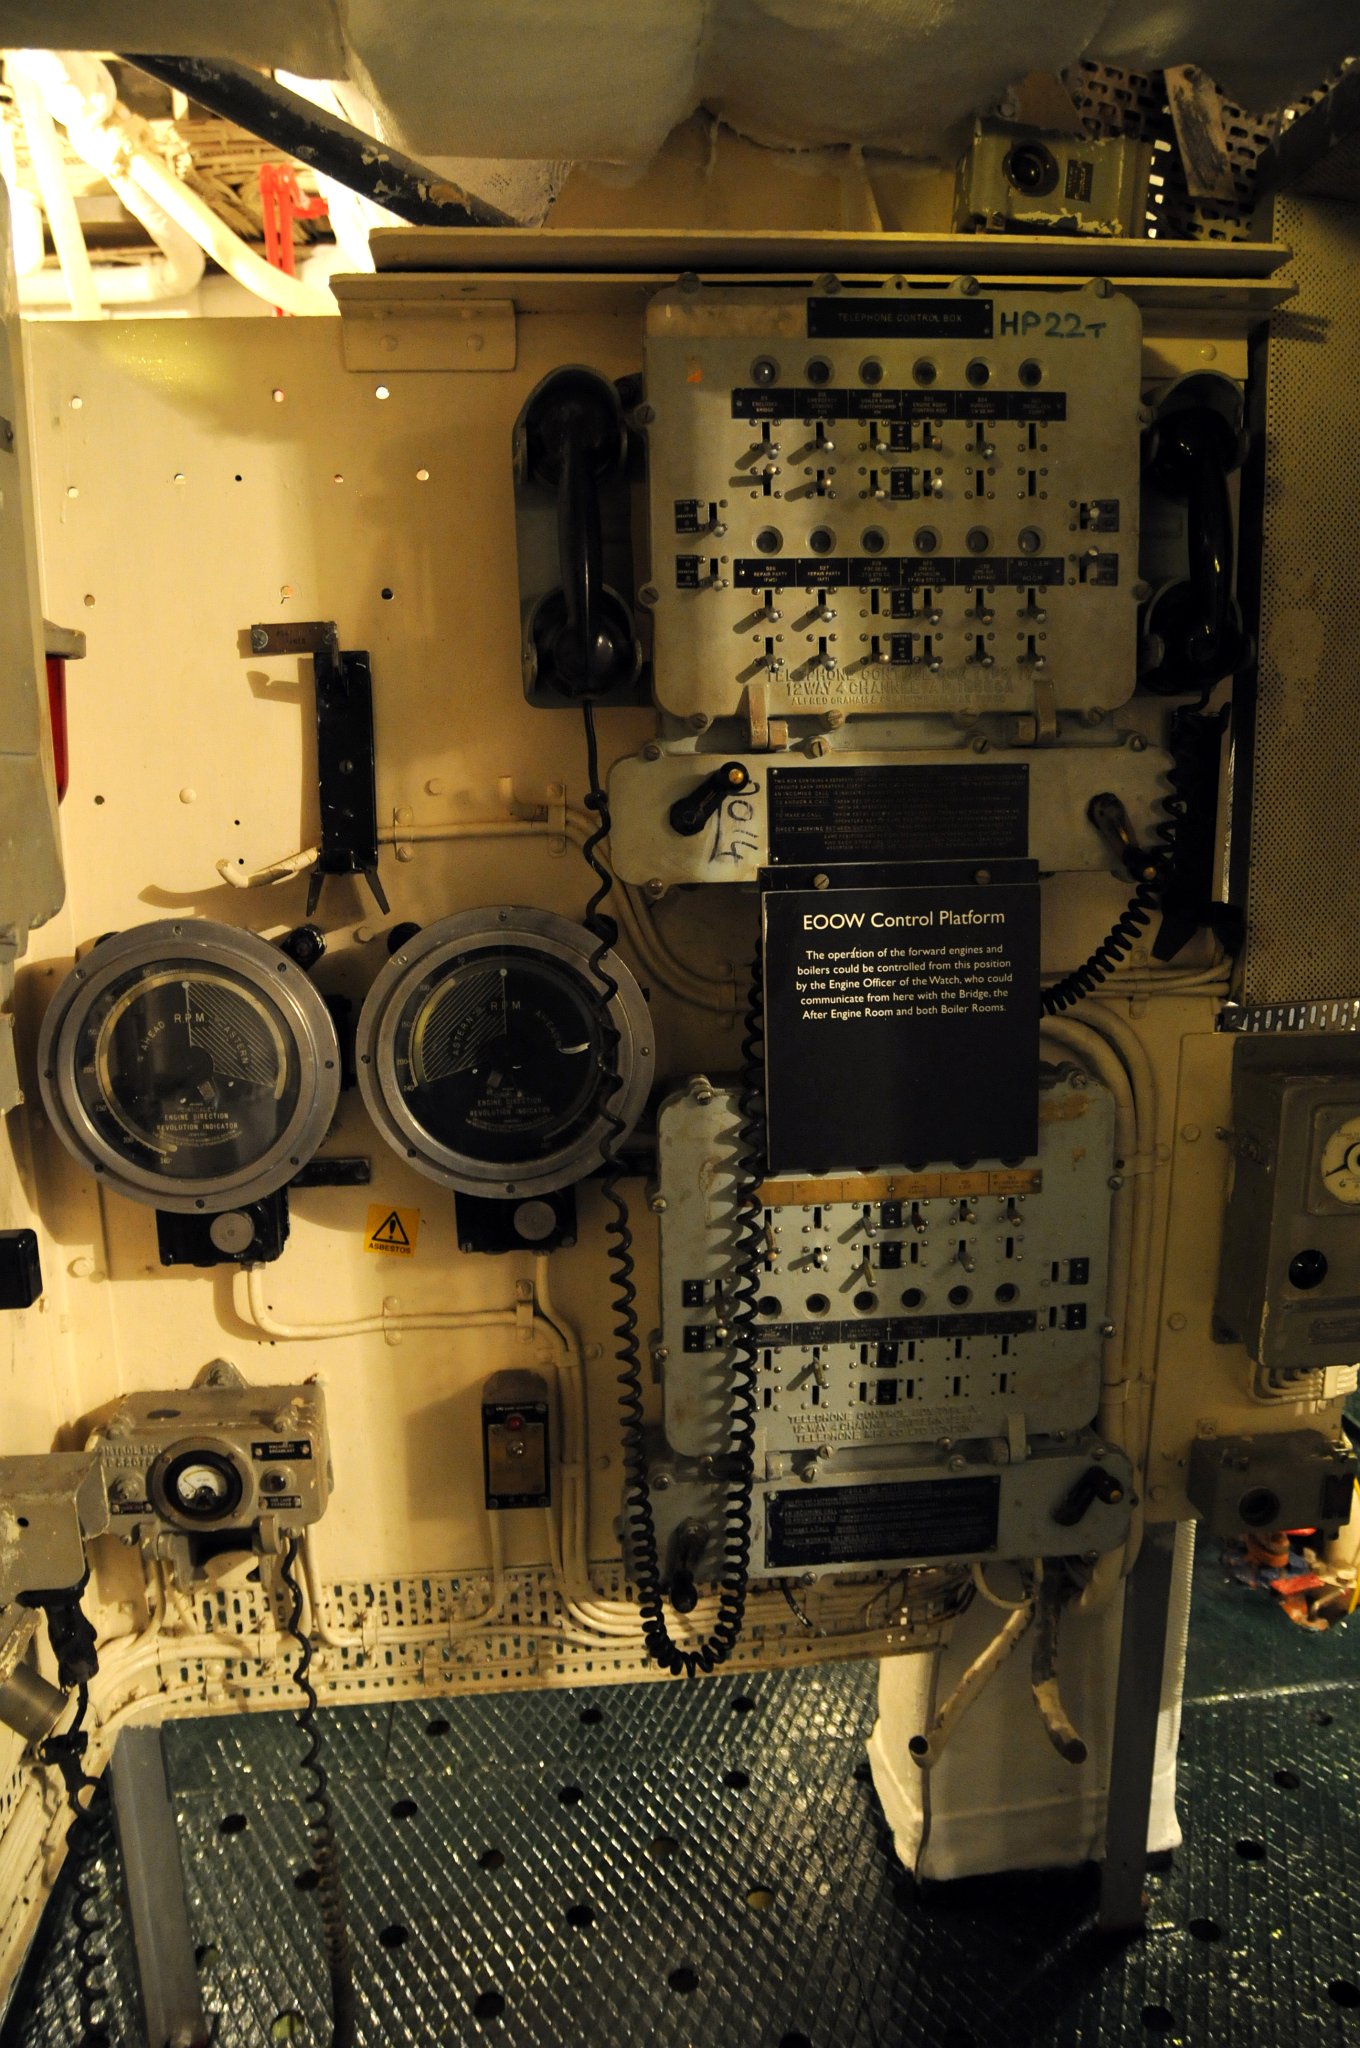 DSC_4802_1.jpg - Provoz předních motorů a kotlů může být ovládán a kontrolován důstojníkem (Engine Officer of the Watch) z této místnosti. Odtud lze komunikovat přímo s můstkem, strojovnou i oběma kotelnami.